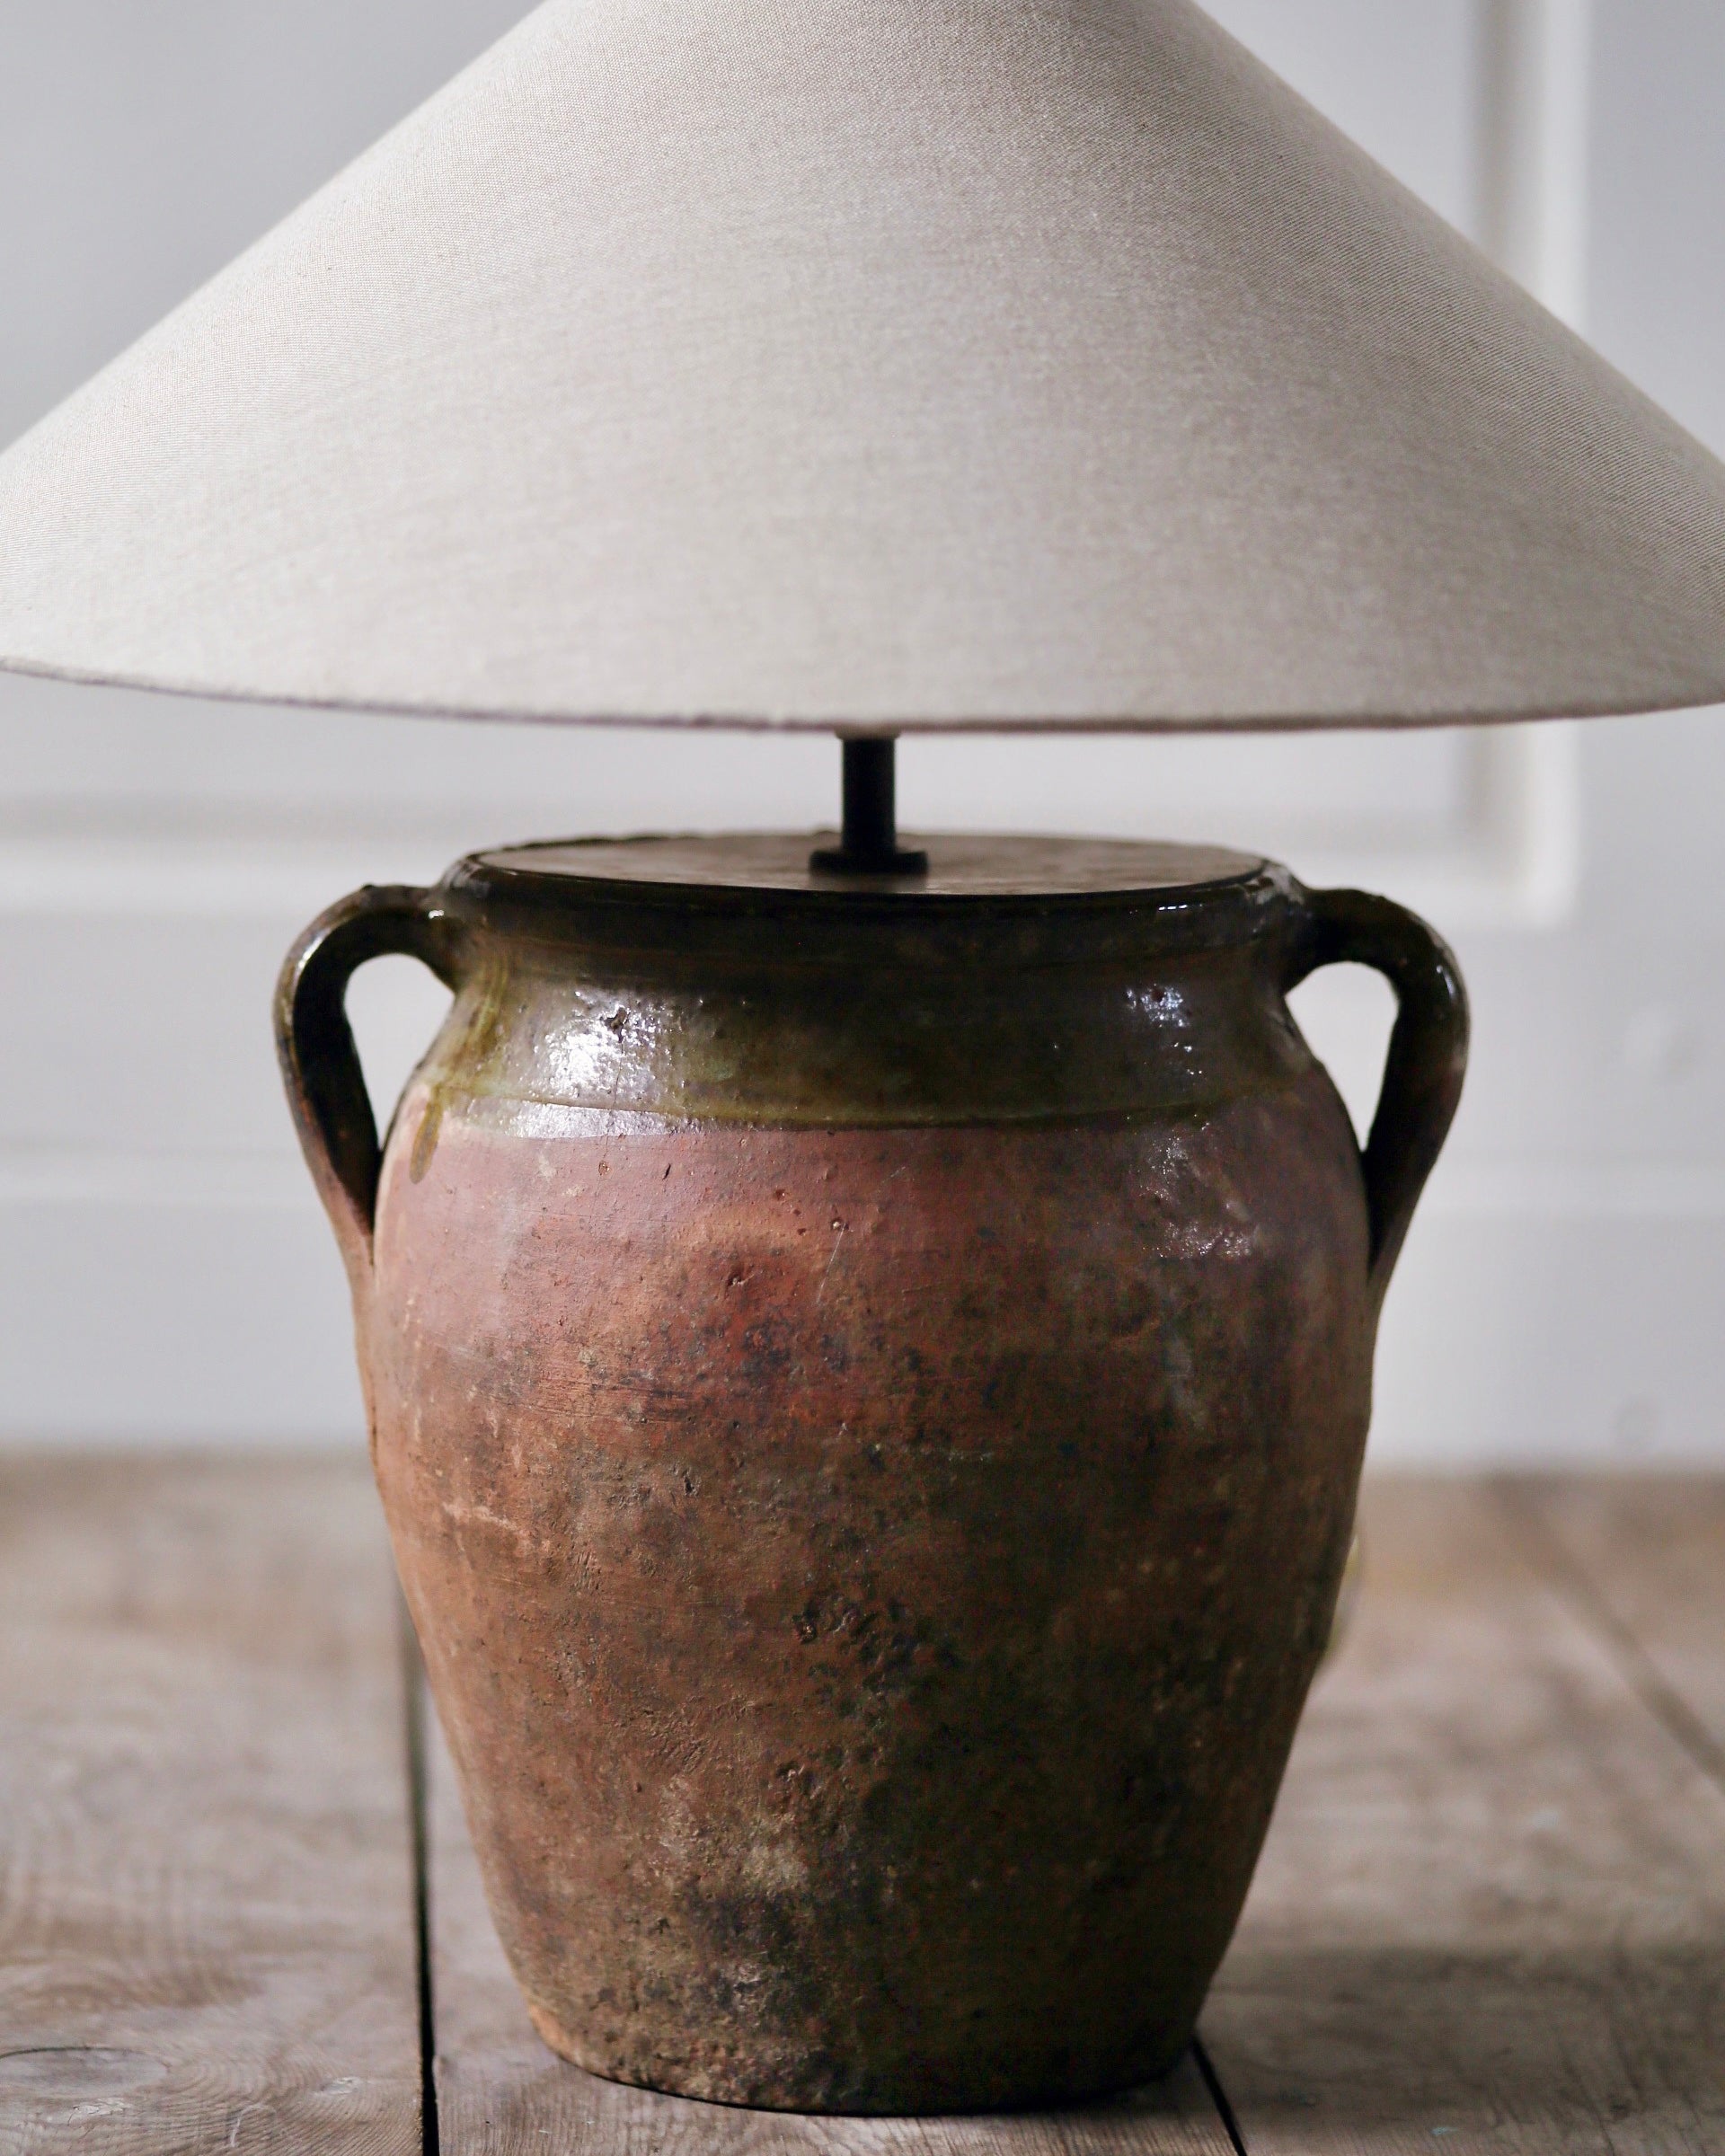 Natural aged patina of clay table lamp